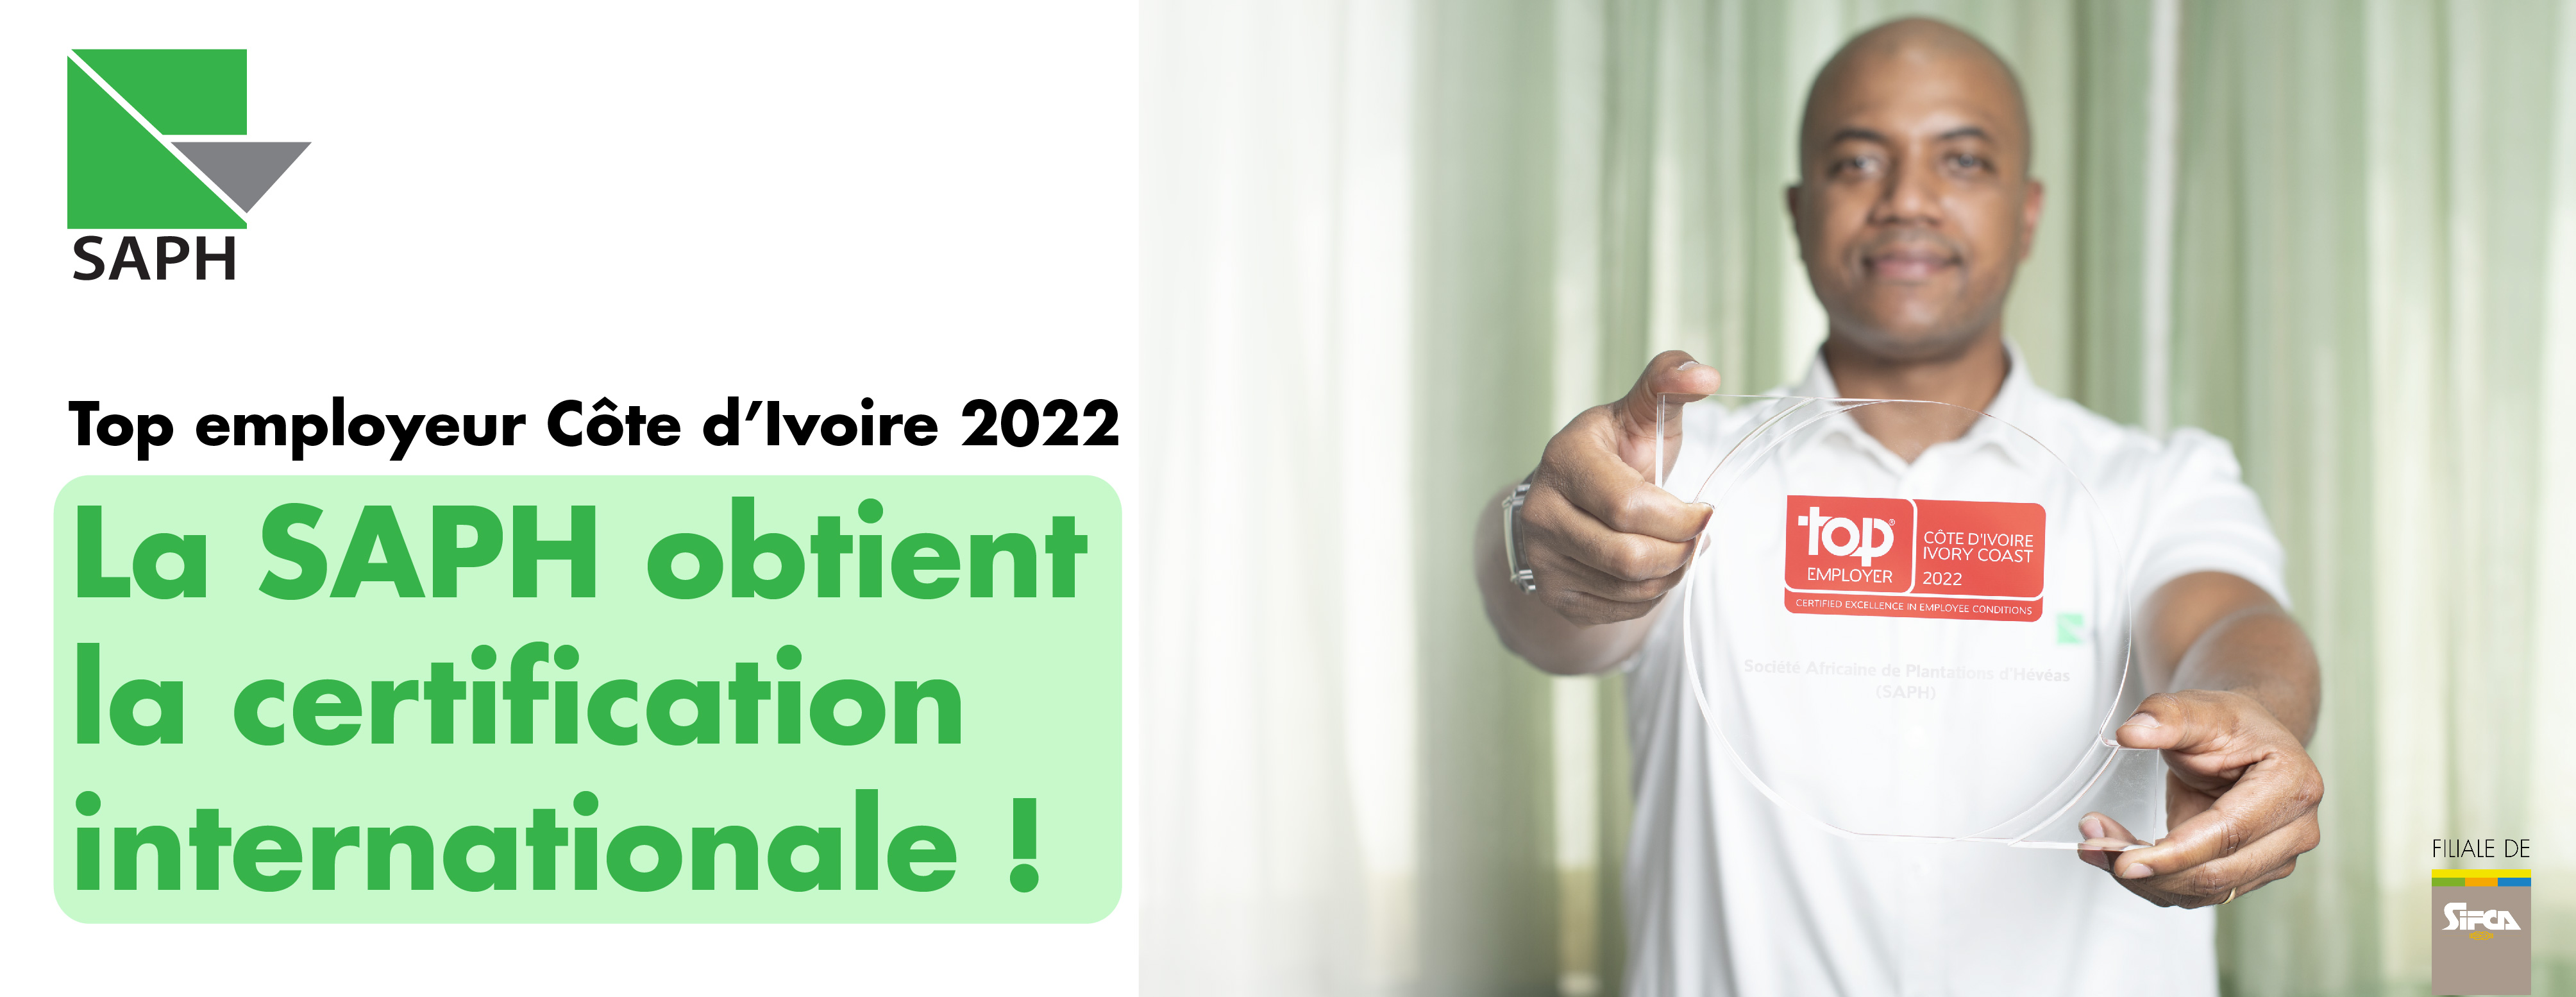 La SAPH décroche la Certification Internationale TOP EMPLOYEUR Côte d’Ivoire 2022